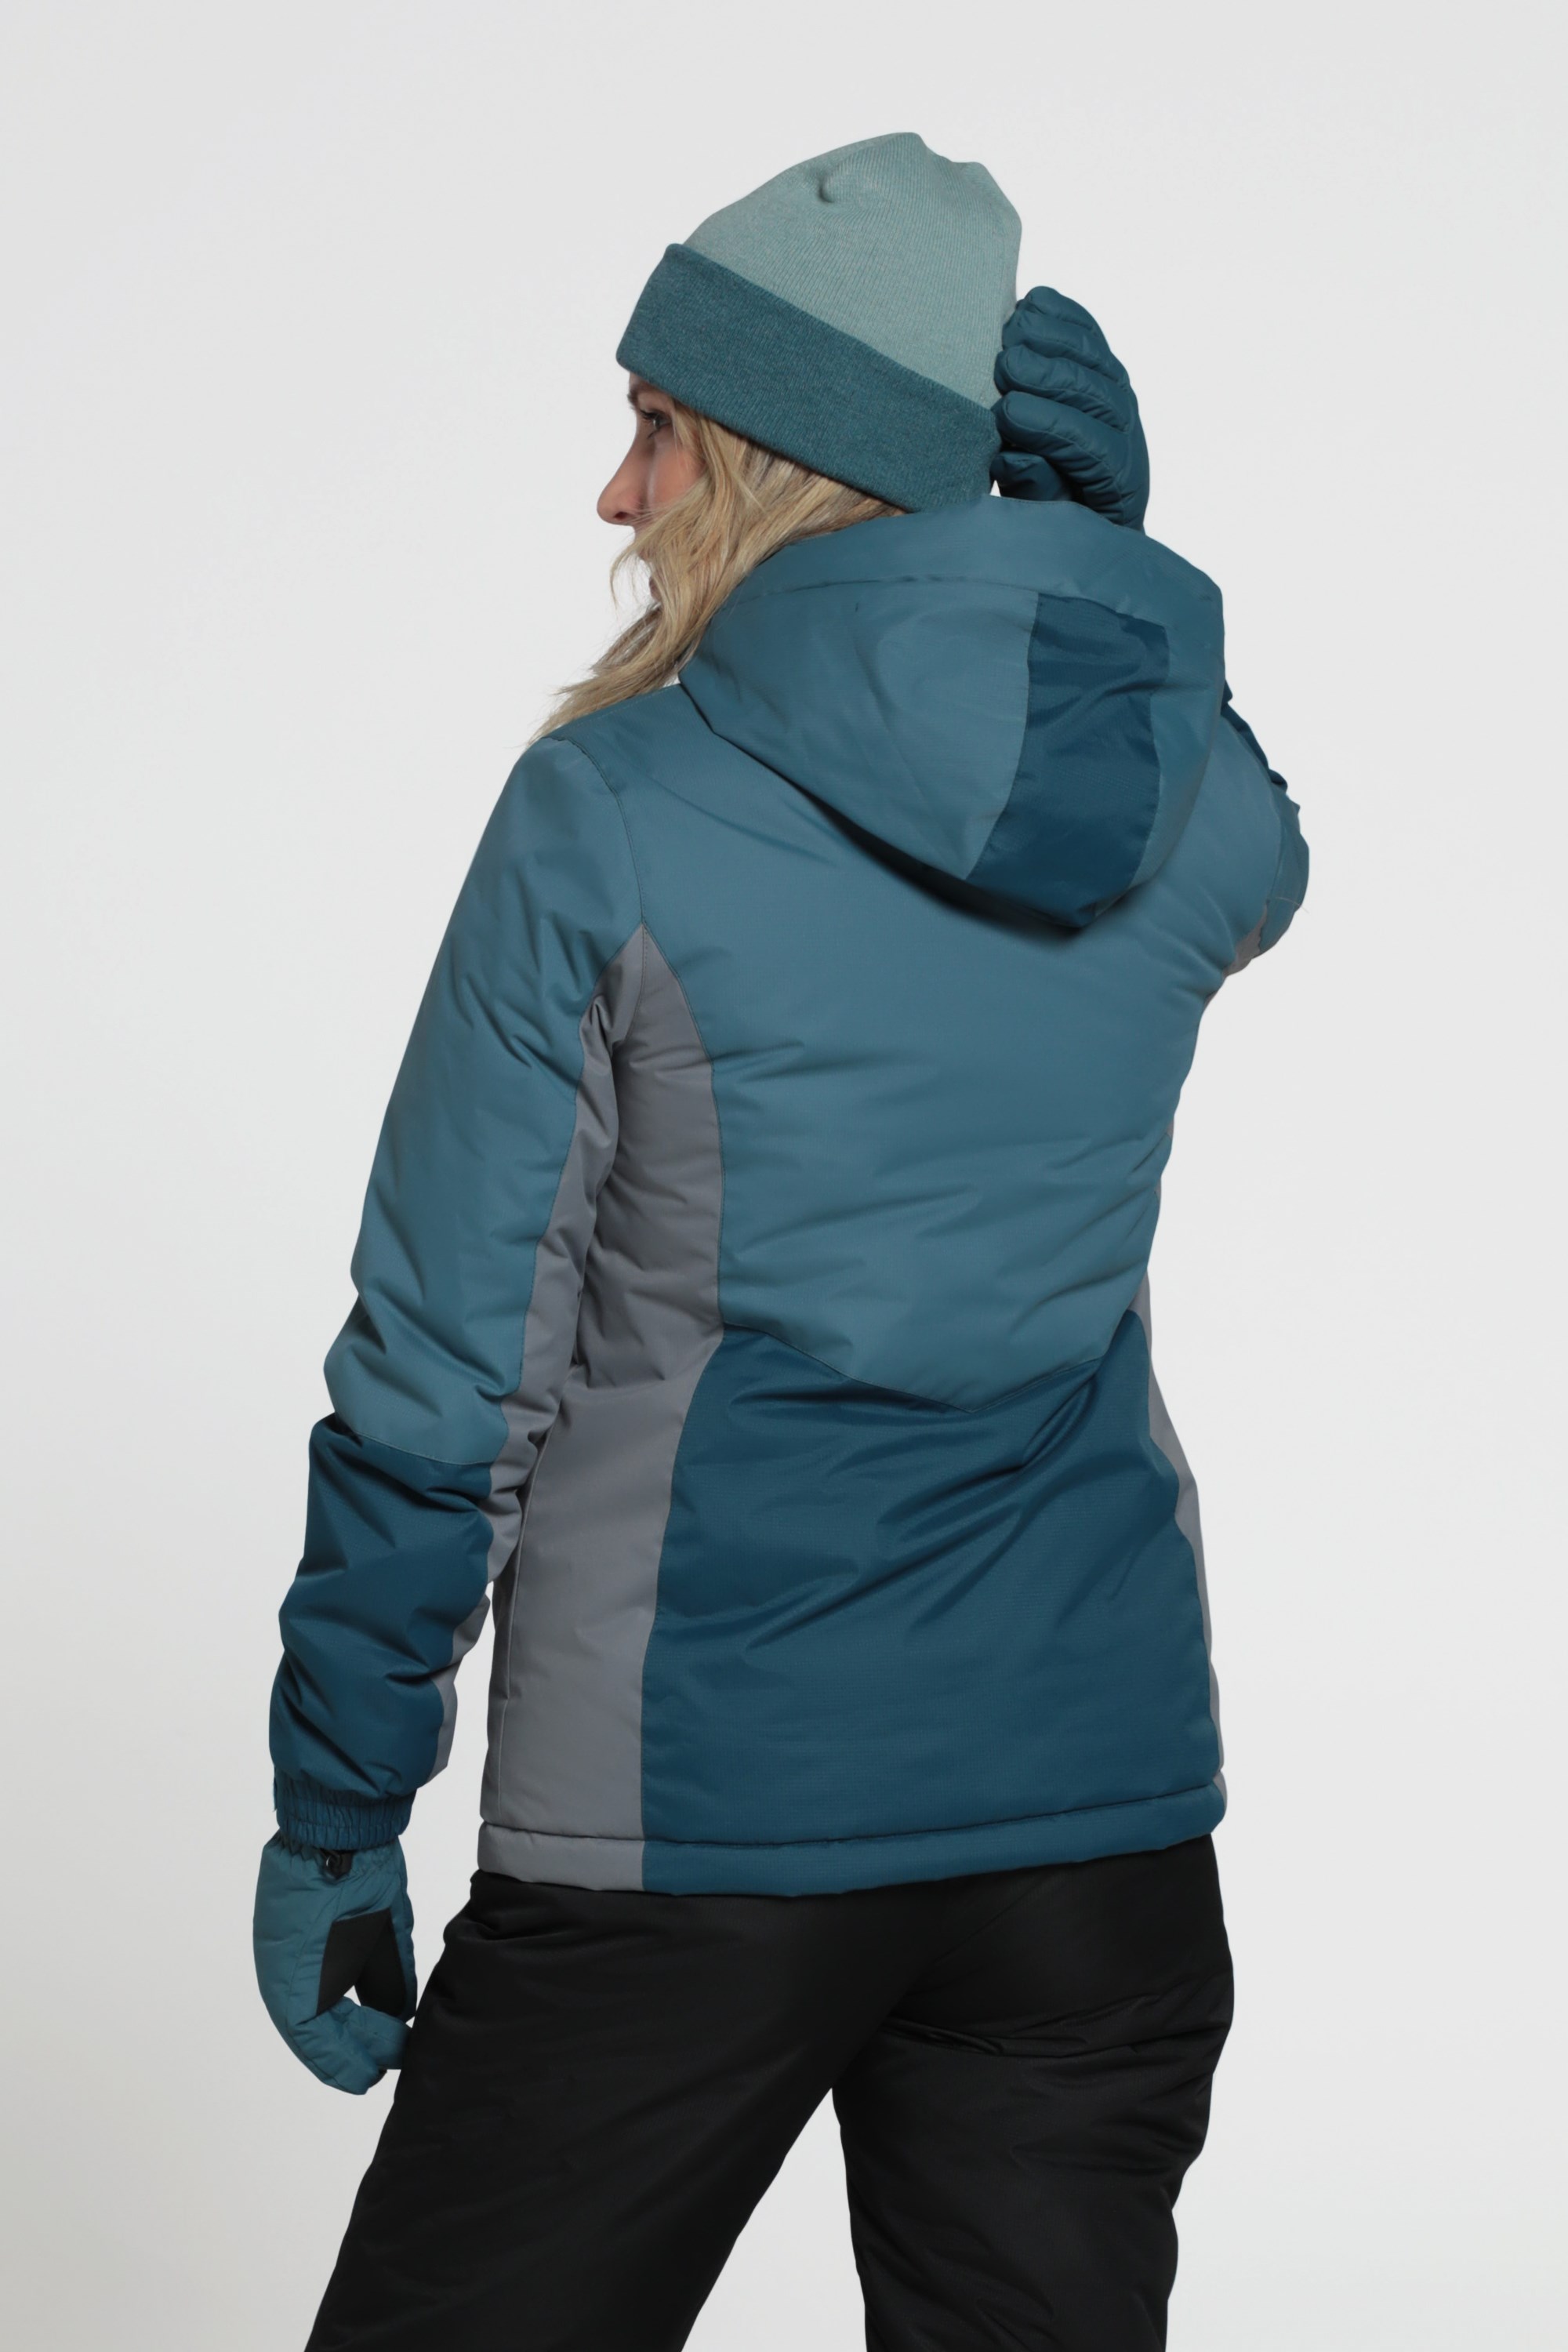 Hiver Marque : Mountain WarehouseMountain Warehouse Veste de Ski texturée Blizzard pour Femme pour Ski ou Snowboard Imperméable et Respirante Coutures étanches Jupe Pare-Neige Amovible 